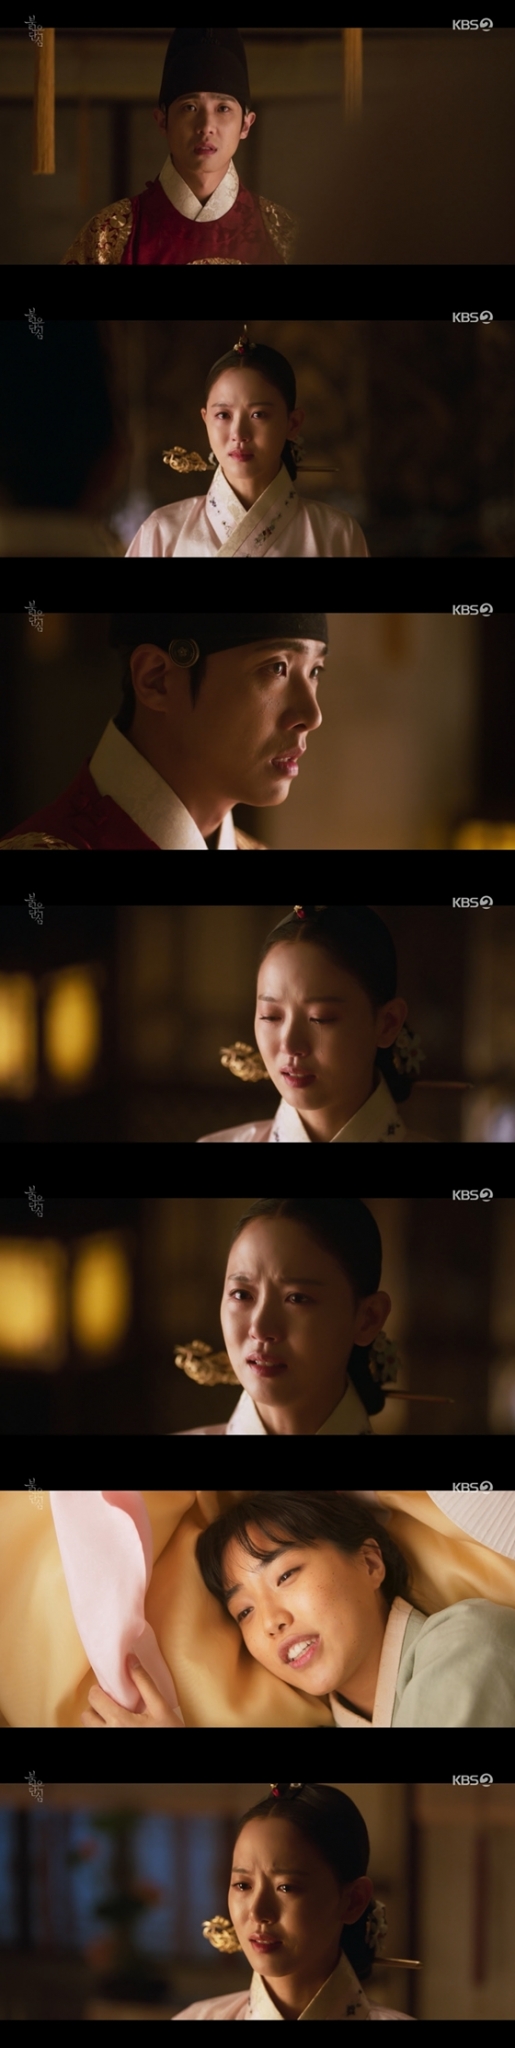 KBS 2TV 월화드라마 '붉은 단심'의 강한나, 이준/사진=KBS 2TV 월화드라마 '붉은 단심' 방송 화면 캡처